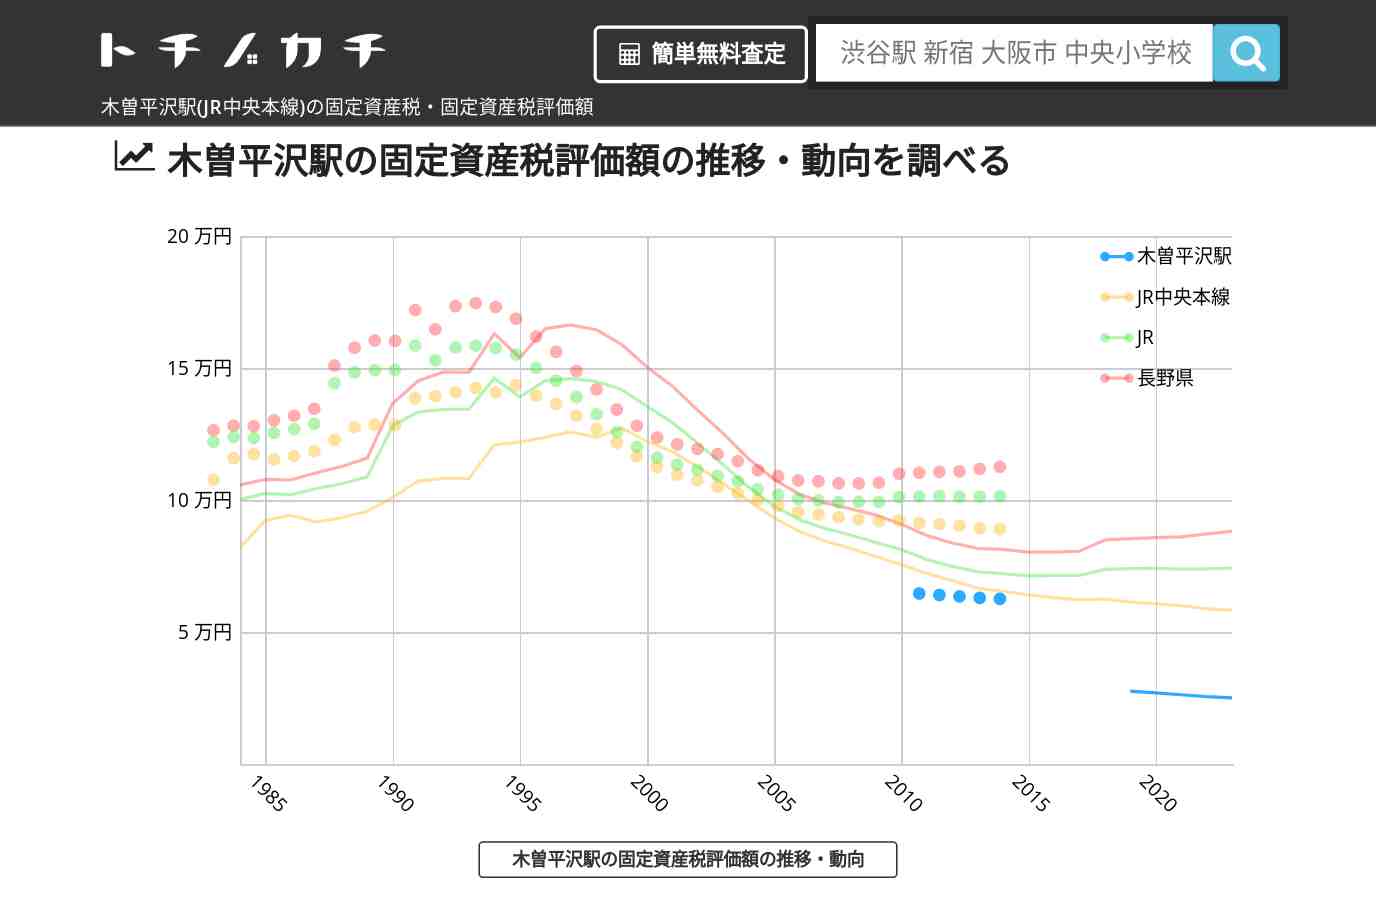 木曽平沢駅(JR中央本線)の固定資産税・固定資産税評価額 | トチノカチ